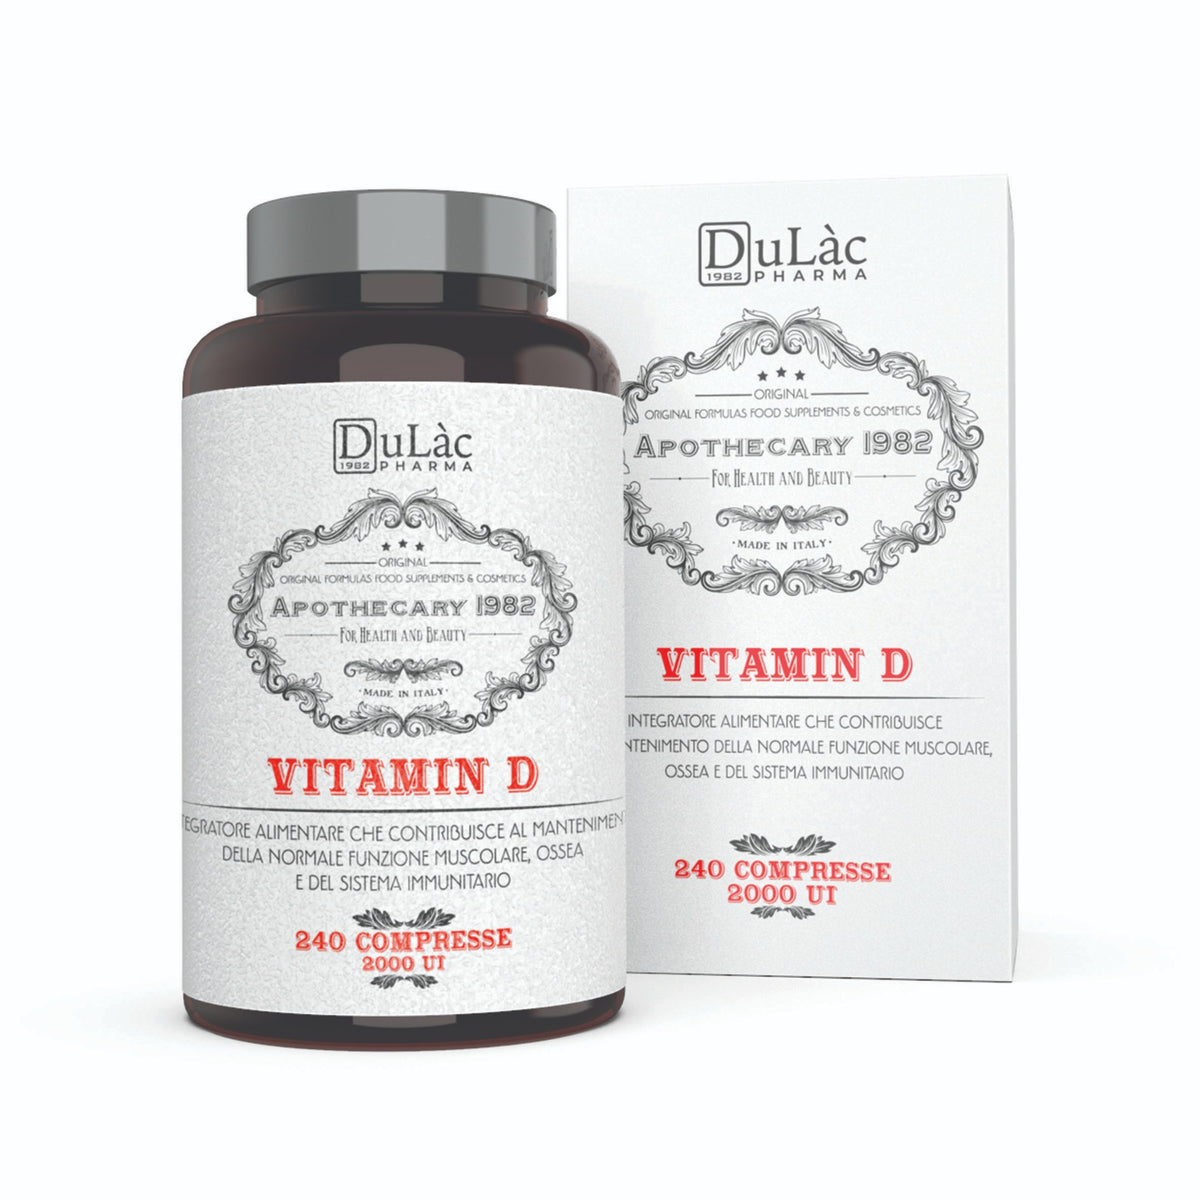 Compresa de vitamina D 240